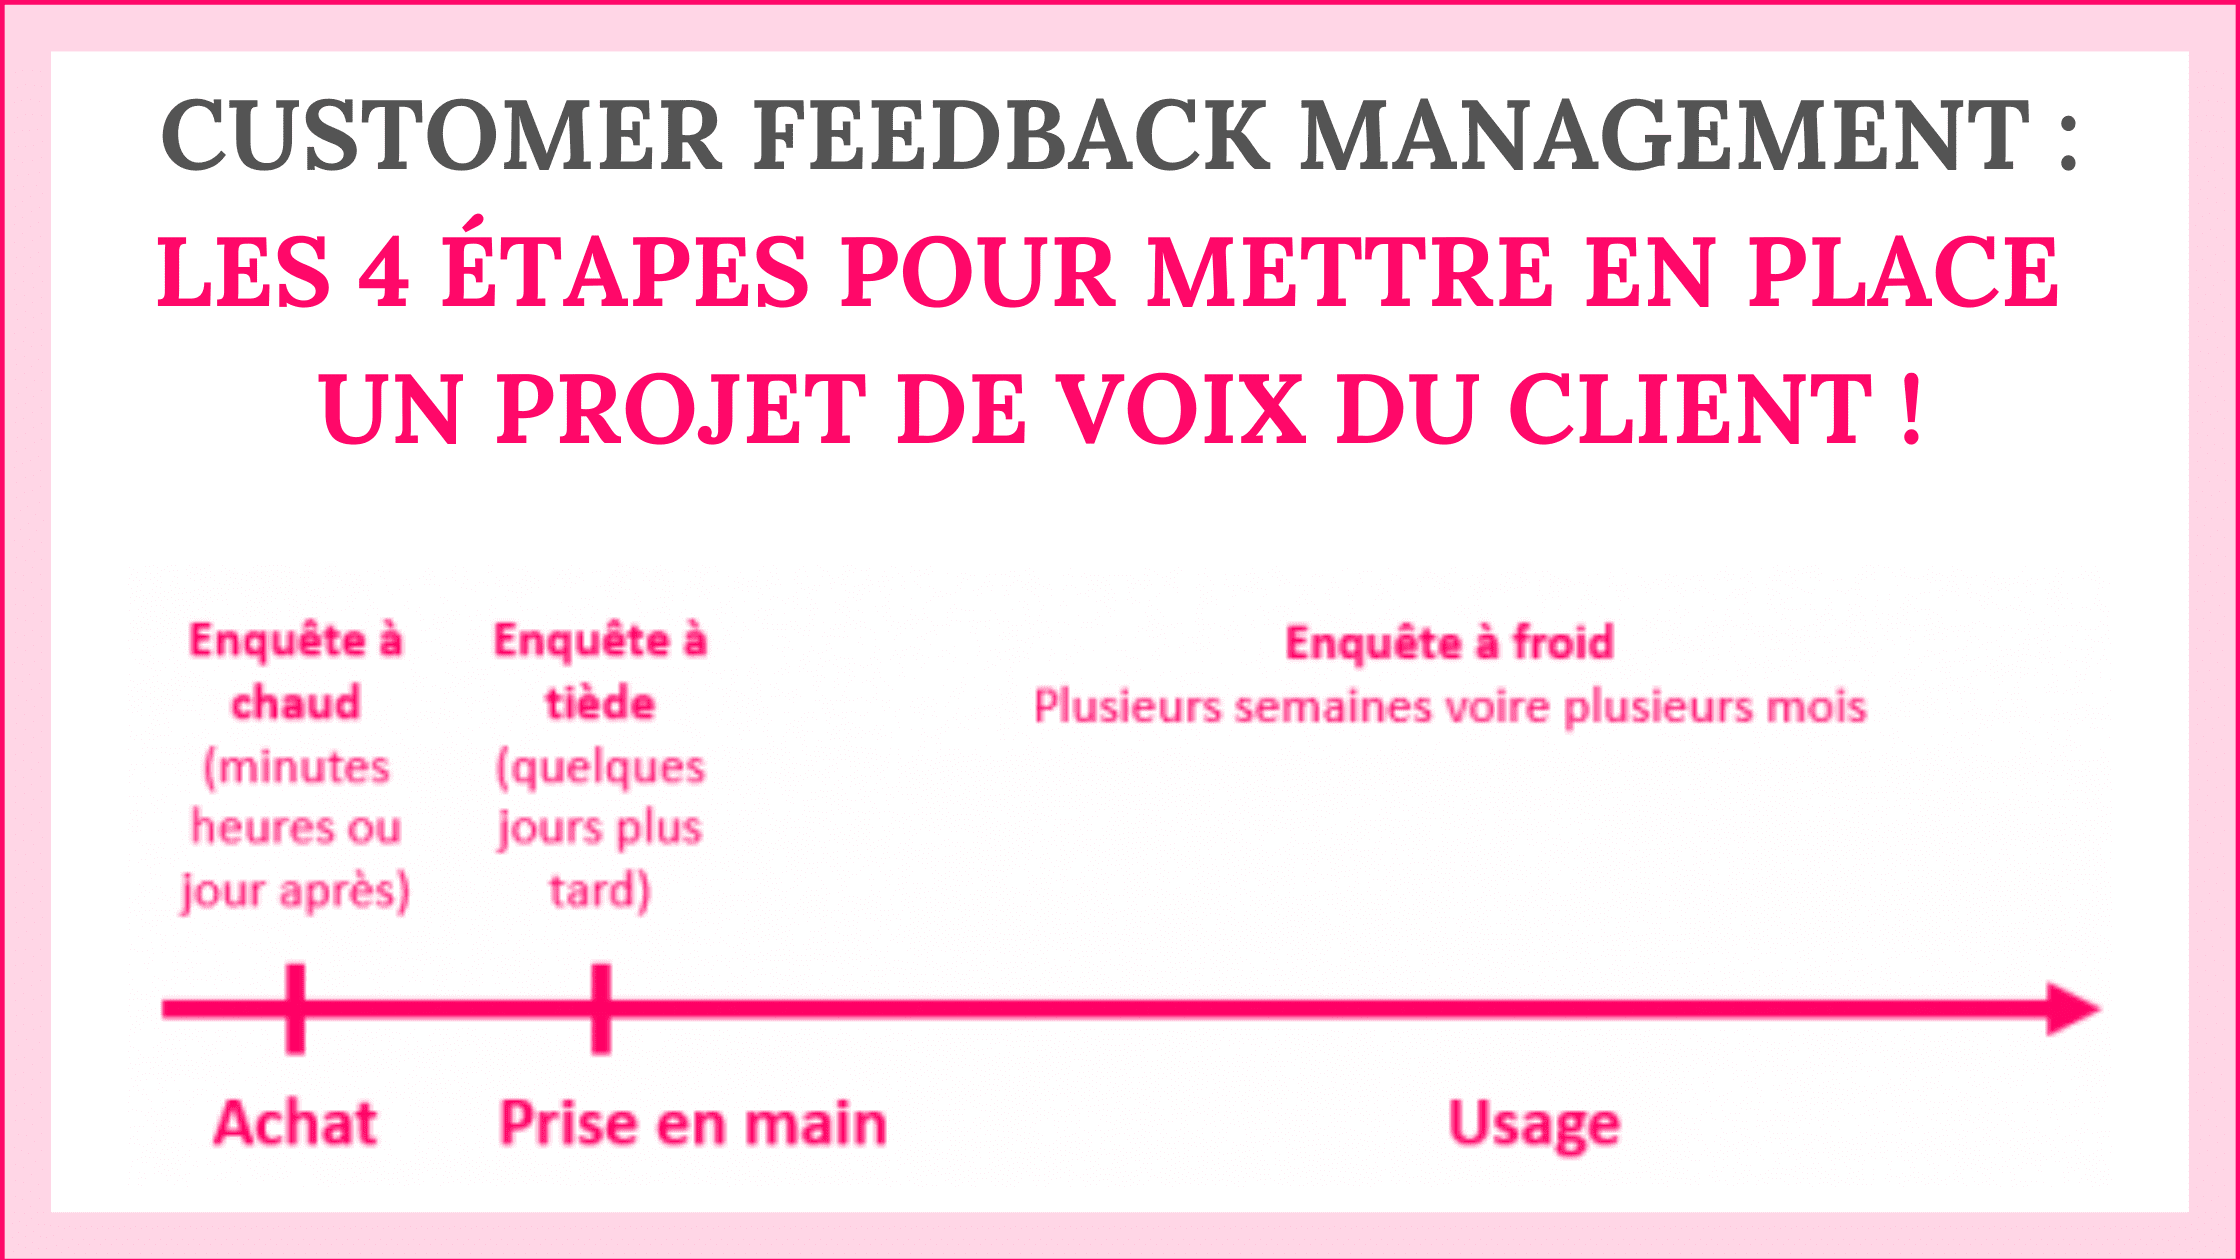 Customer Feedback Management : les 4 étapes pour mettre en place un projet de Voix du Client ! 10